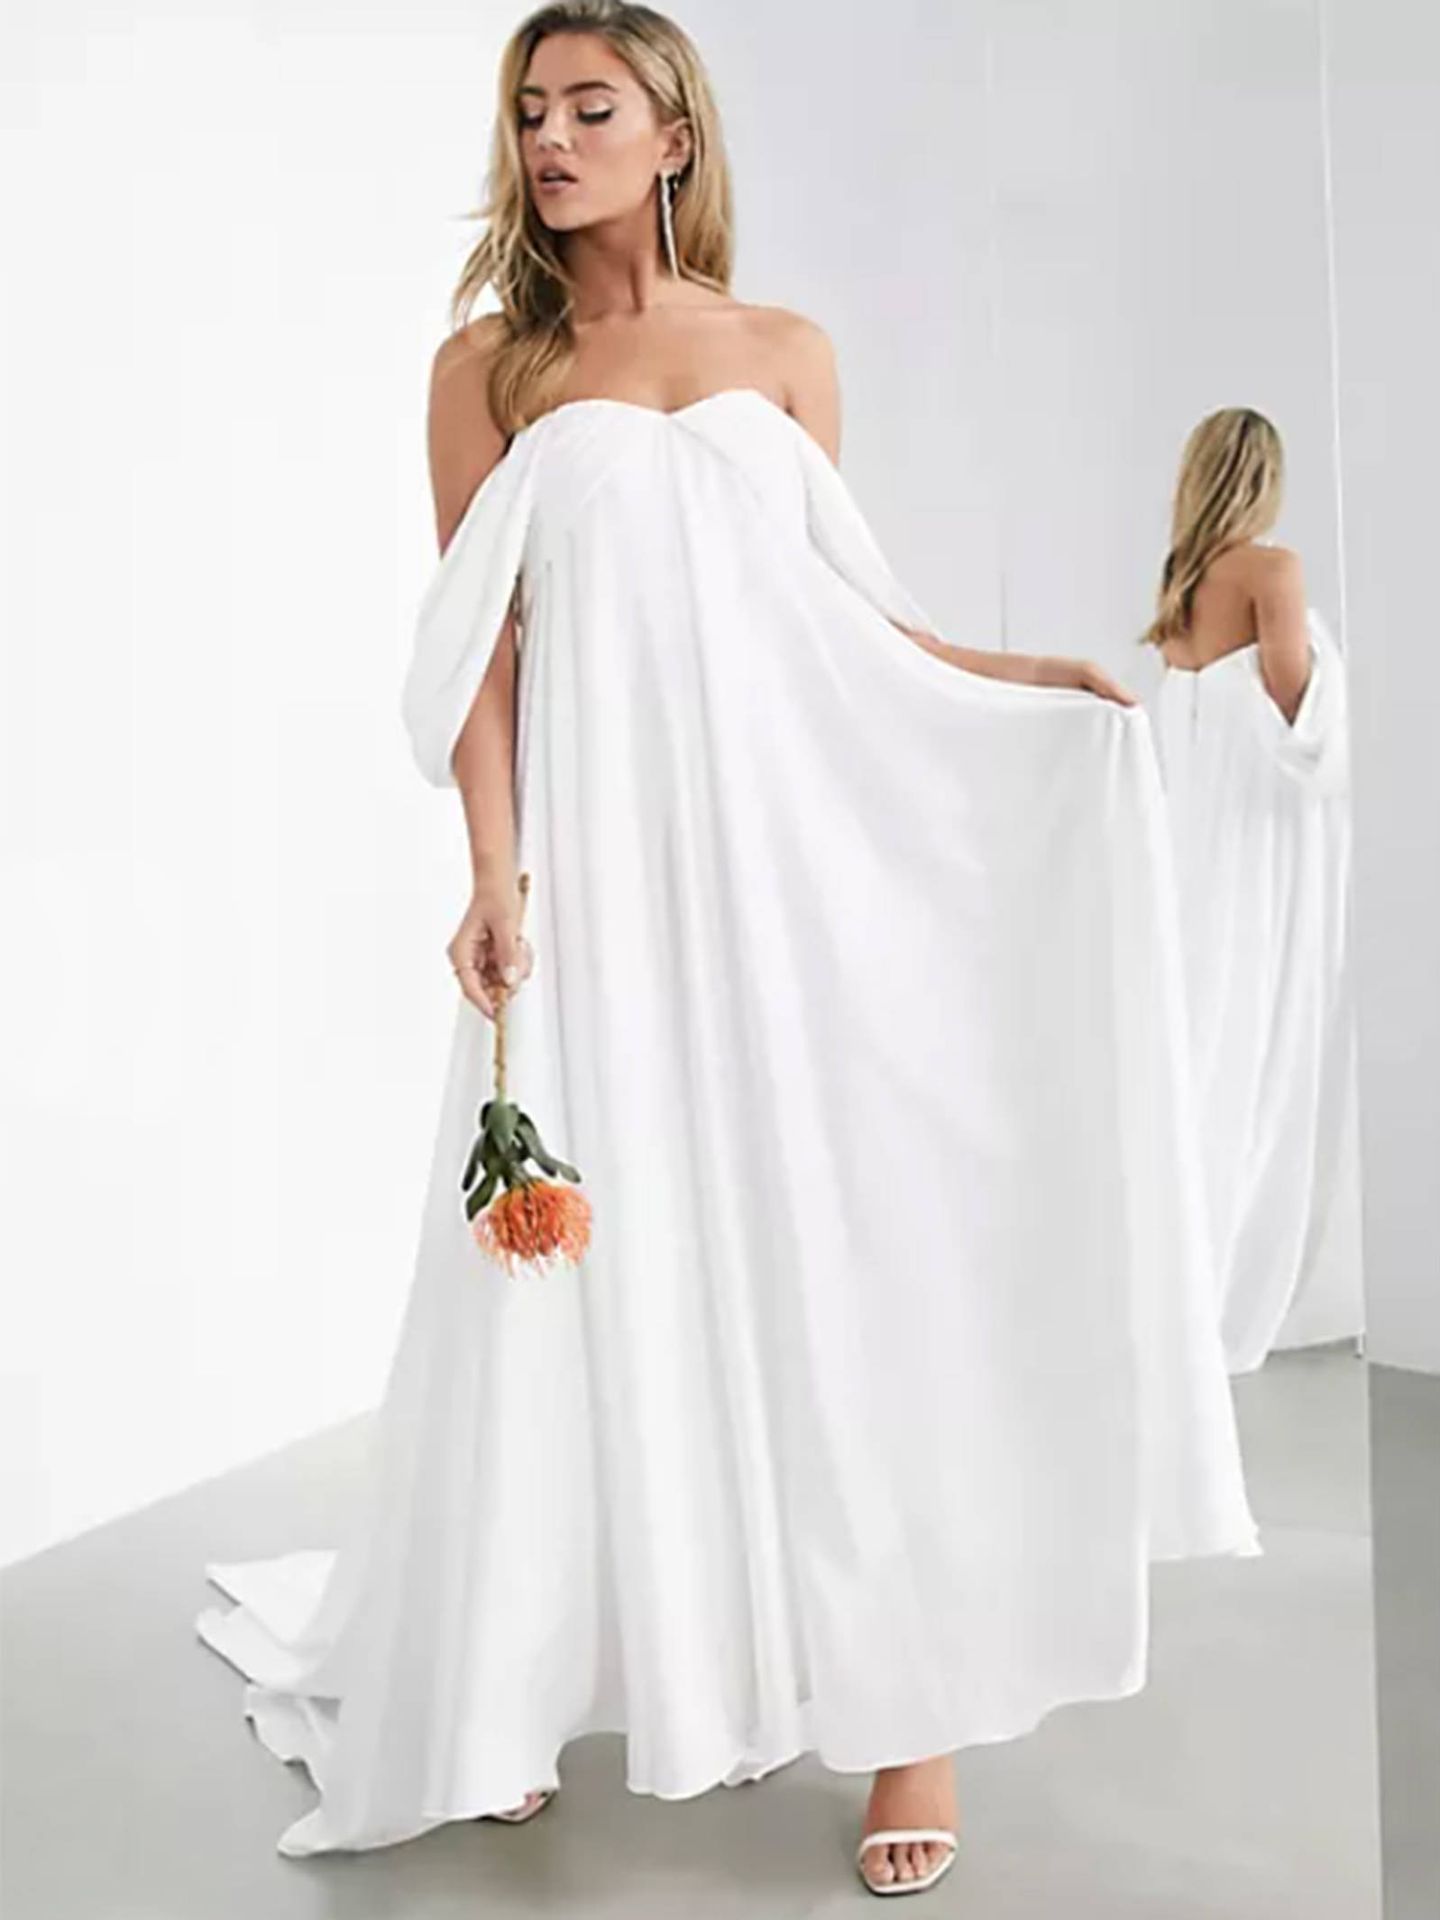 Vestido de novia de Asos. (Cortesía)